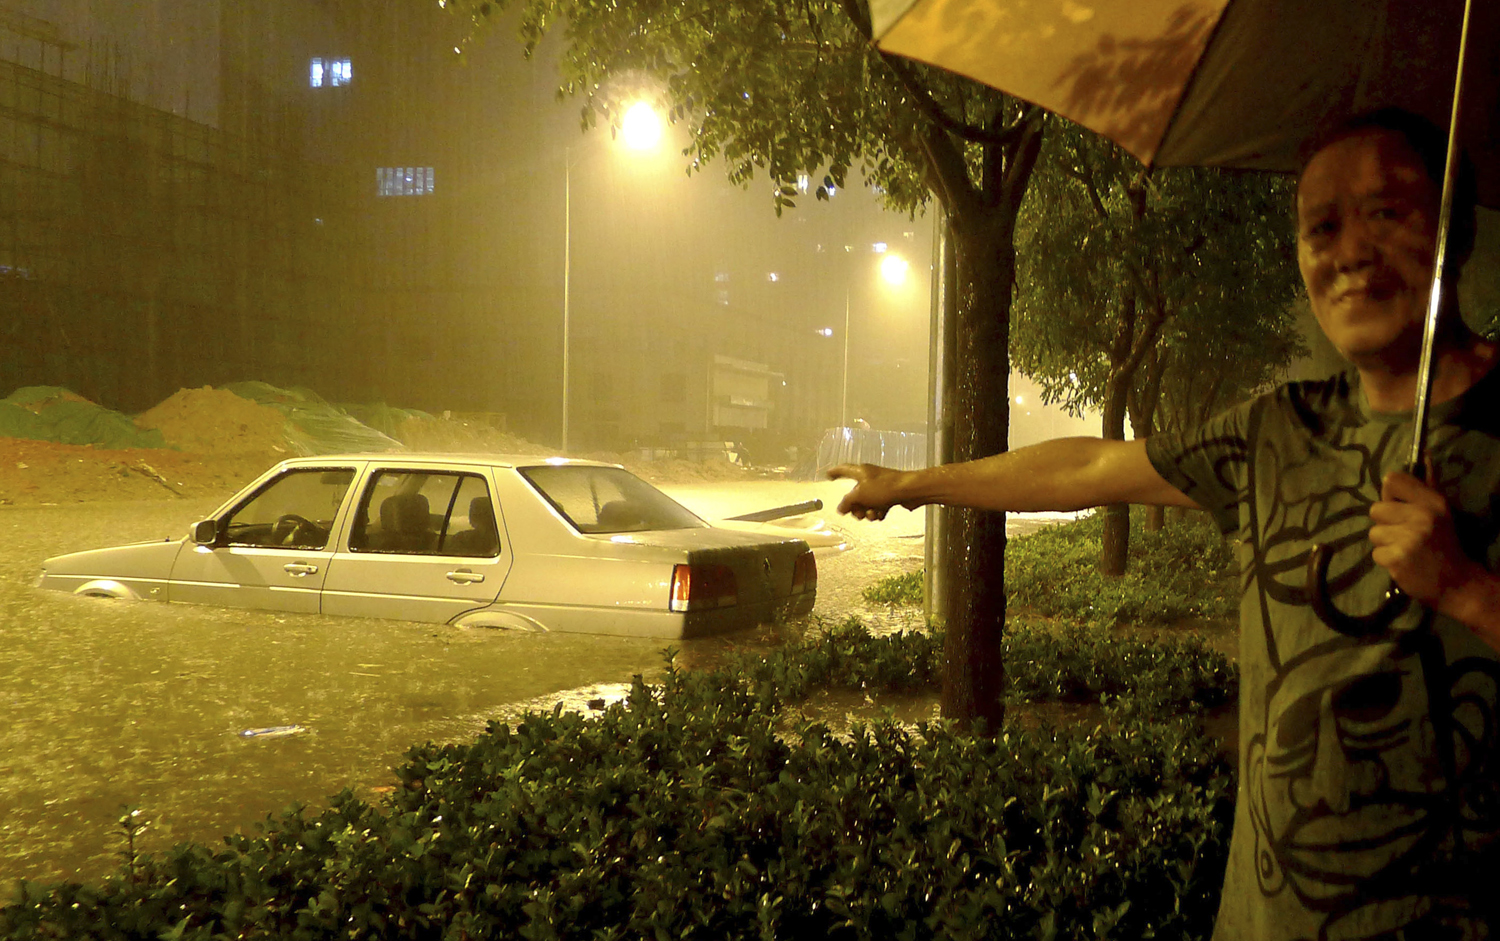 Egy pekingi férfi mutatja az özönvíz jellegű eső által elárasztott kocsiját